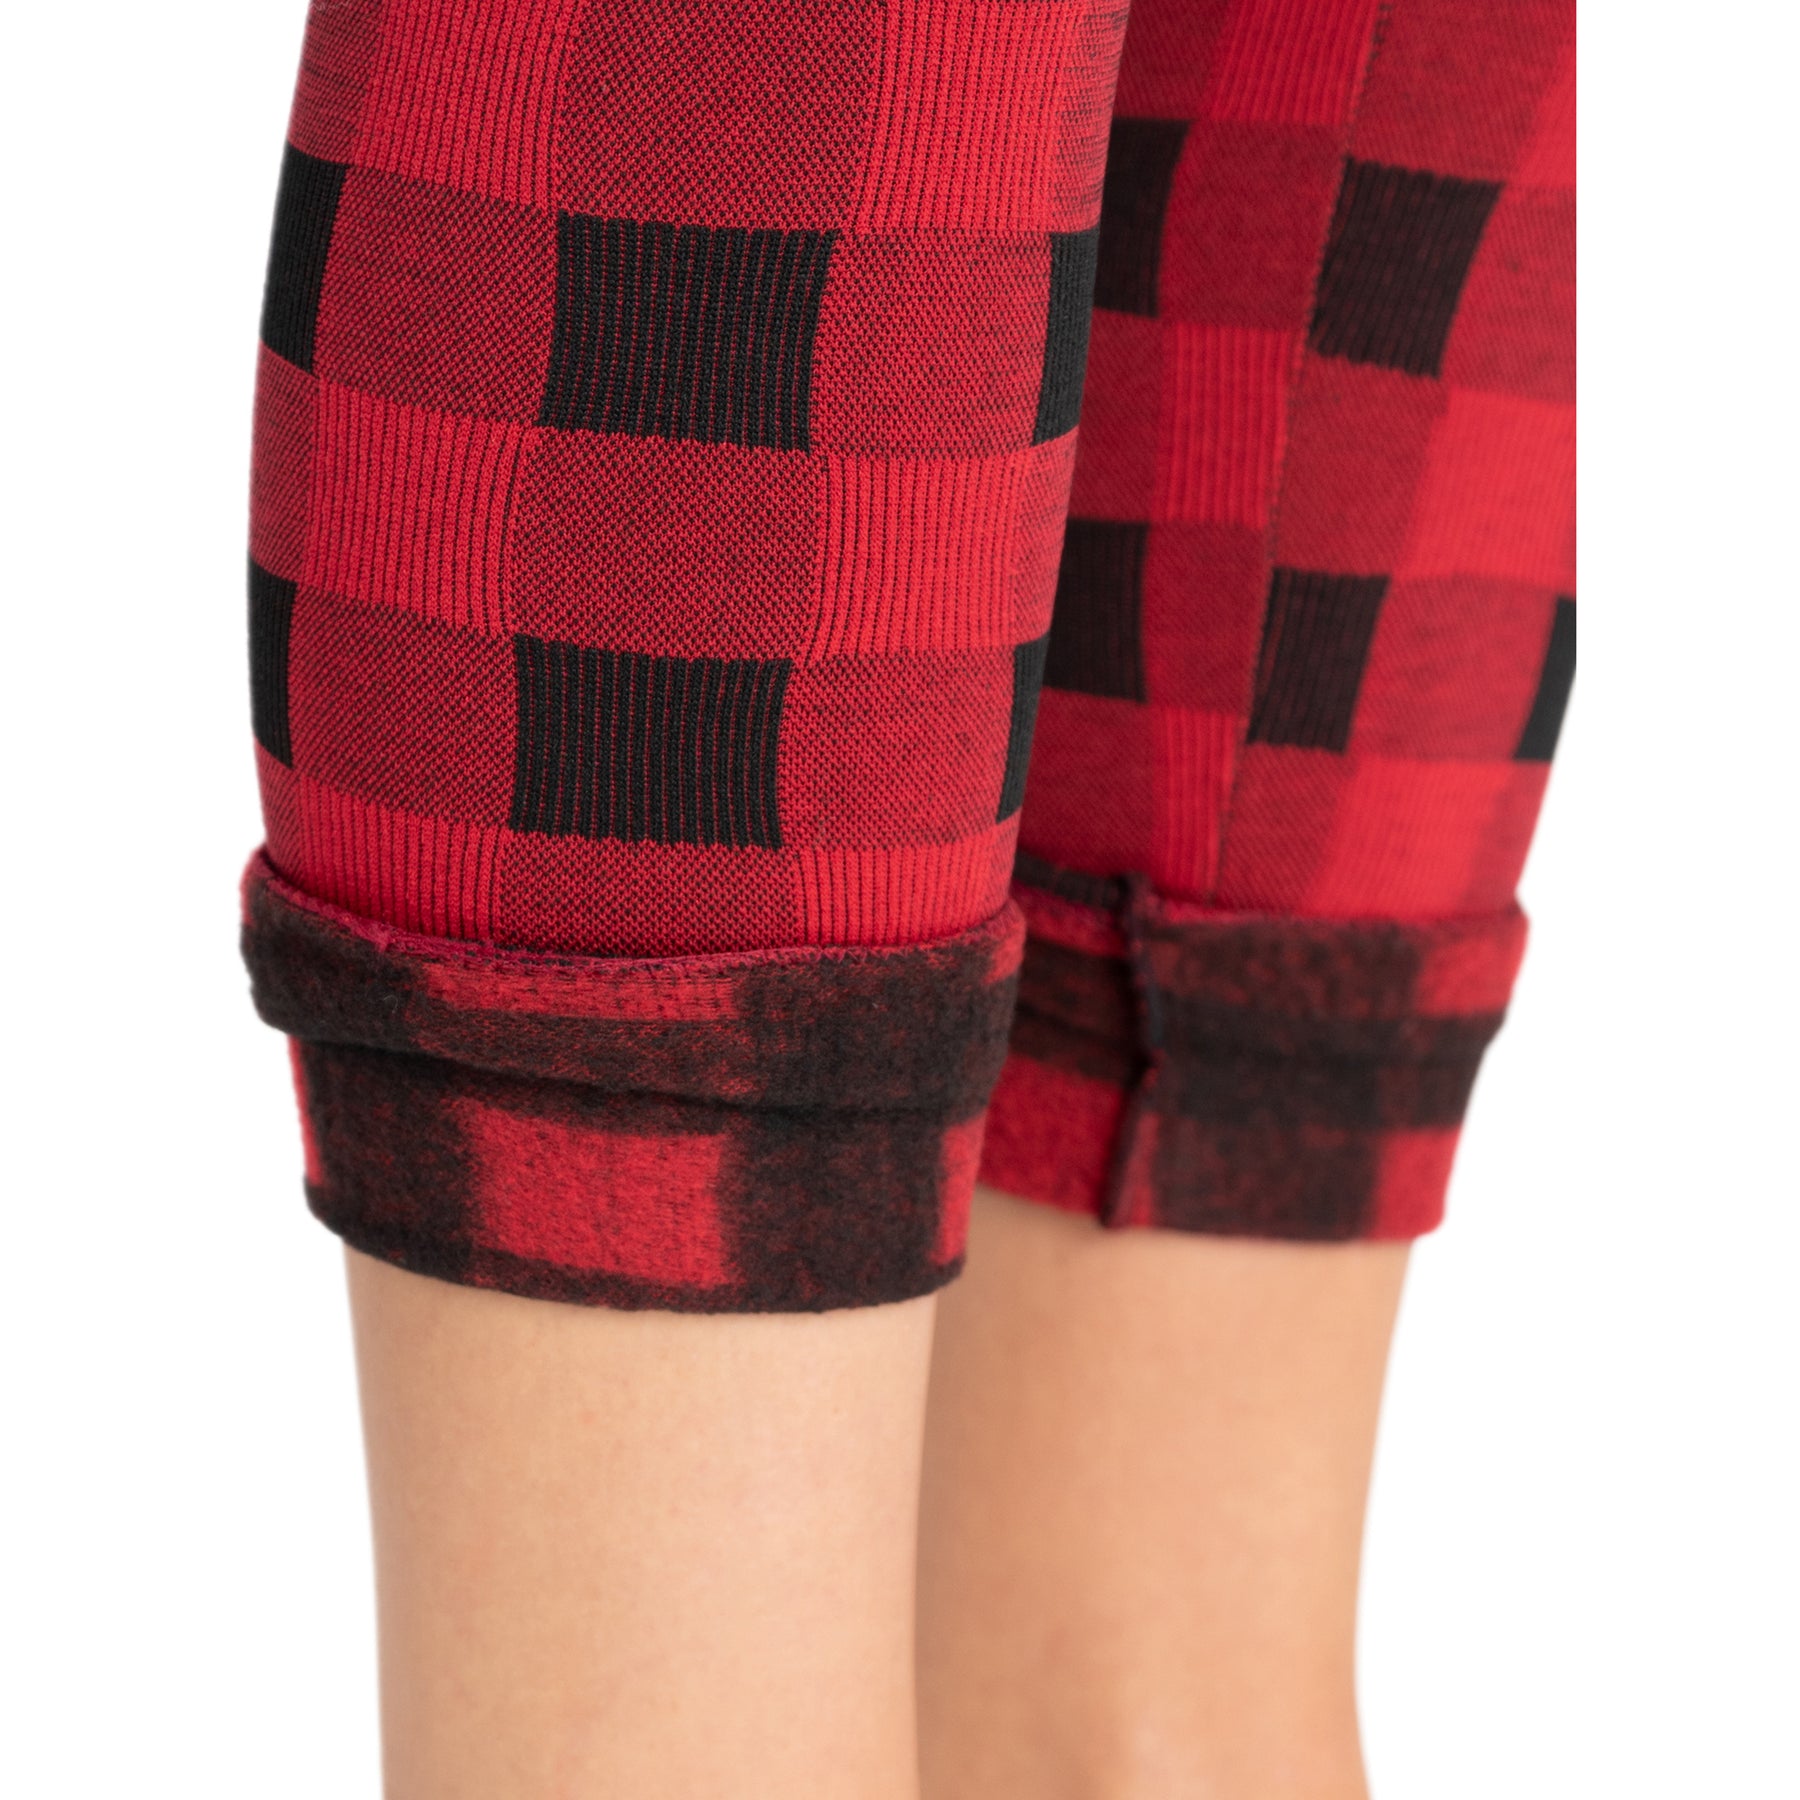 MUK LUKS Women's Fleece Lined Leggings-Burgundy Large/X-Large